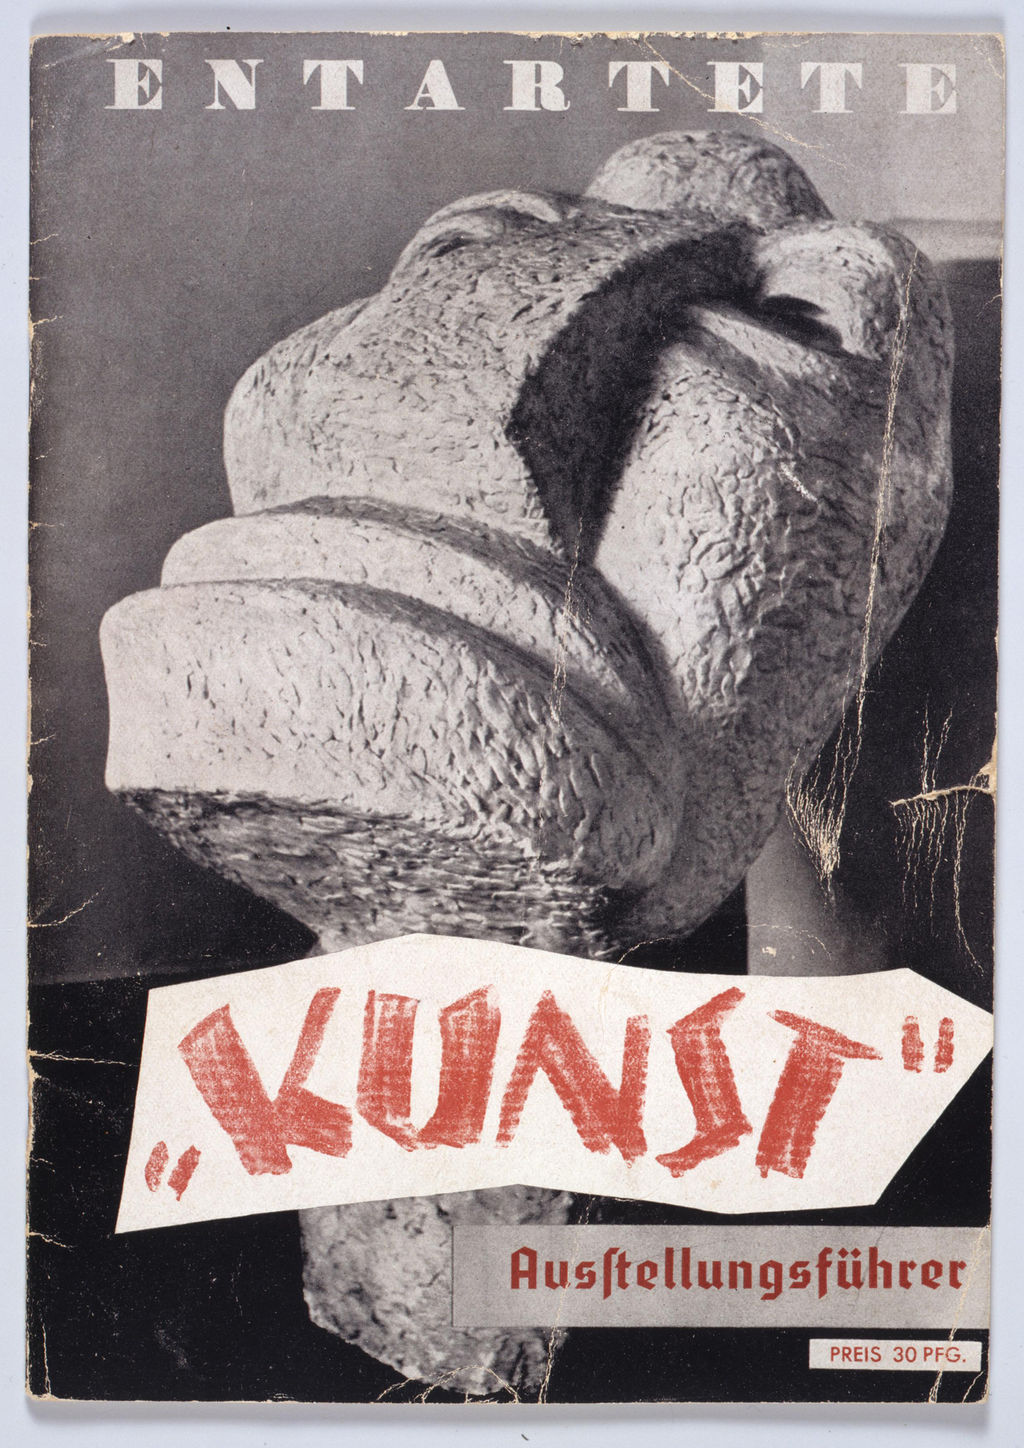 Broschüre: "Entartete Kunst" - Ausstellungsführer, 1937